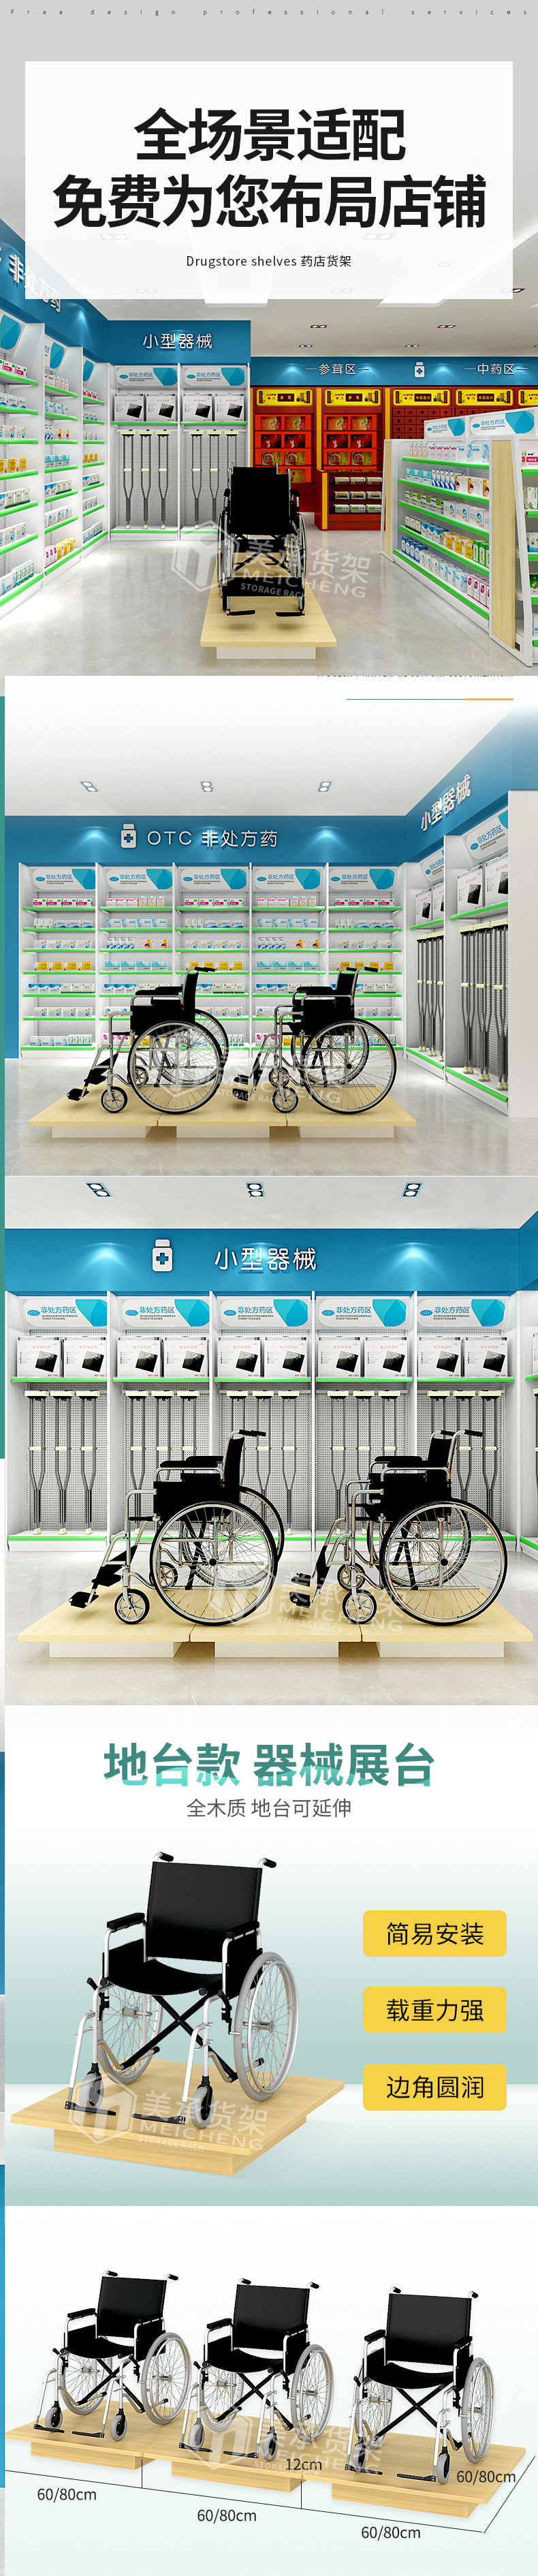 轮椅地台主图+详情.jpg